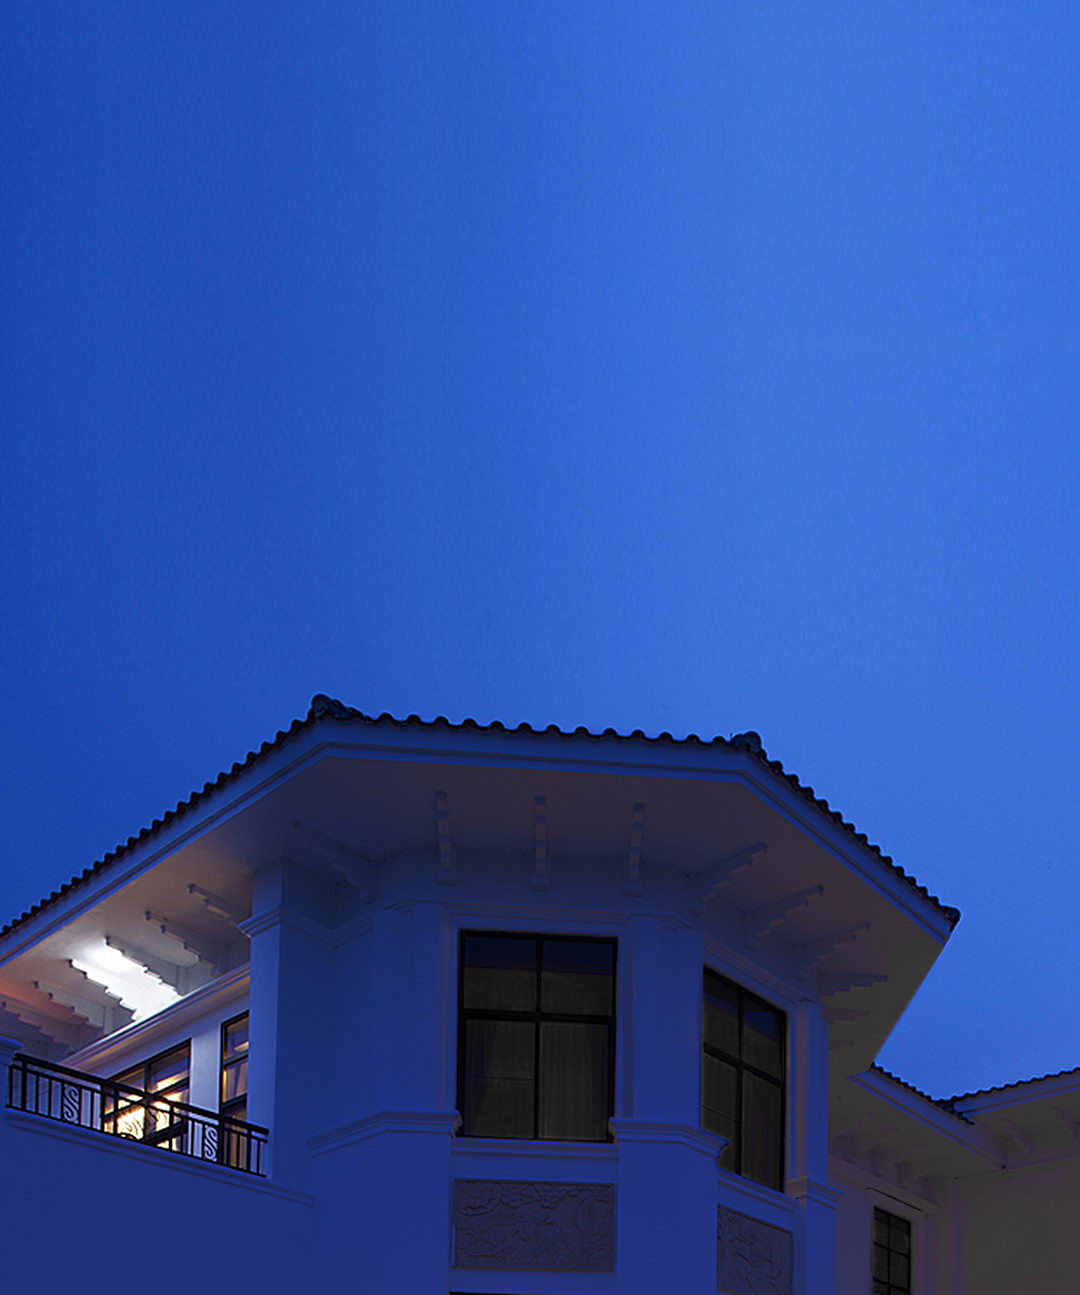 Con sólo presionar una vez, la casa entra en “modo dormir” gracias al panel inteligente Luna de TIS